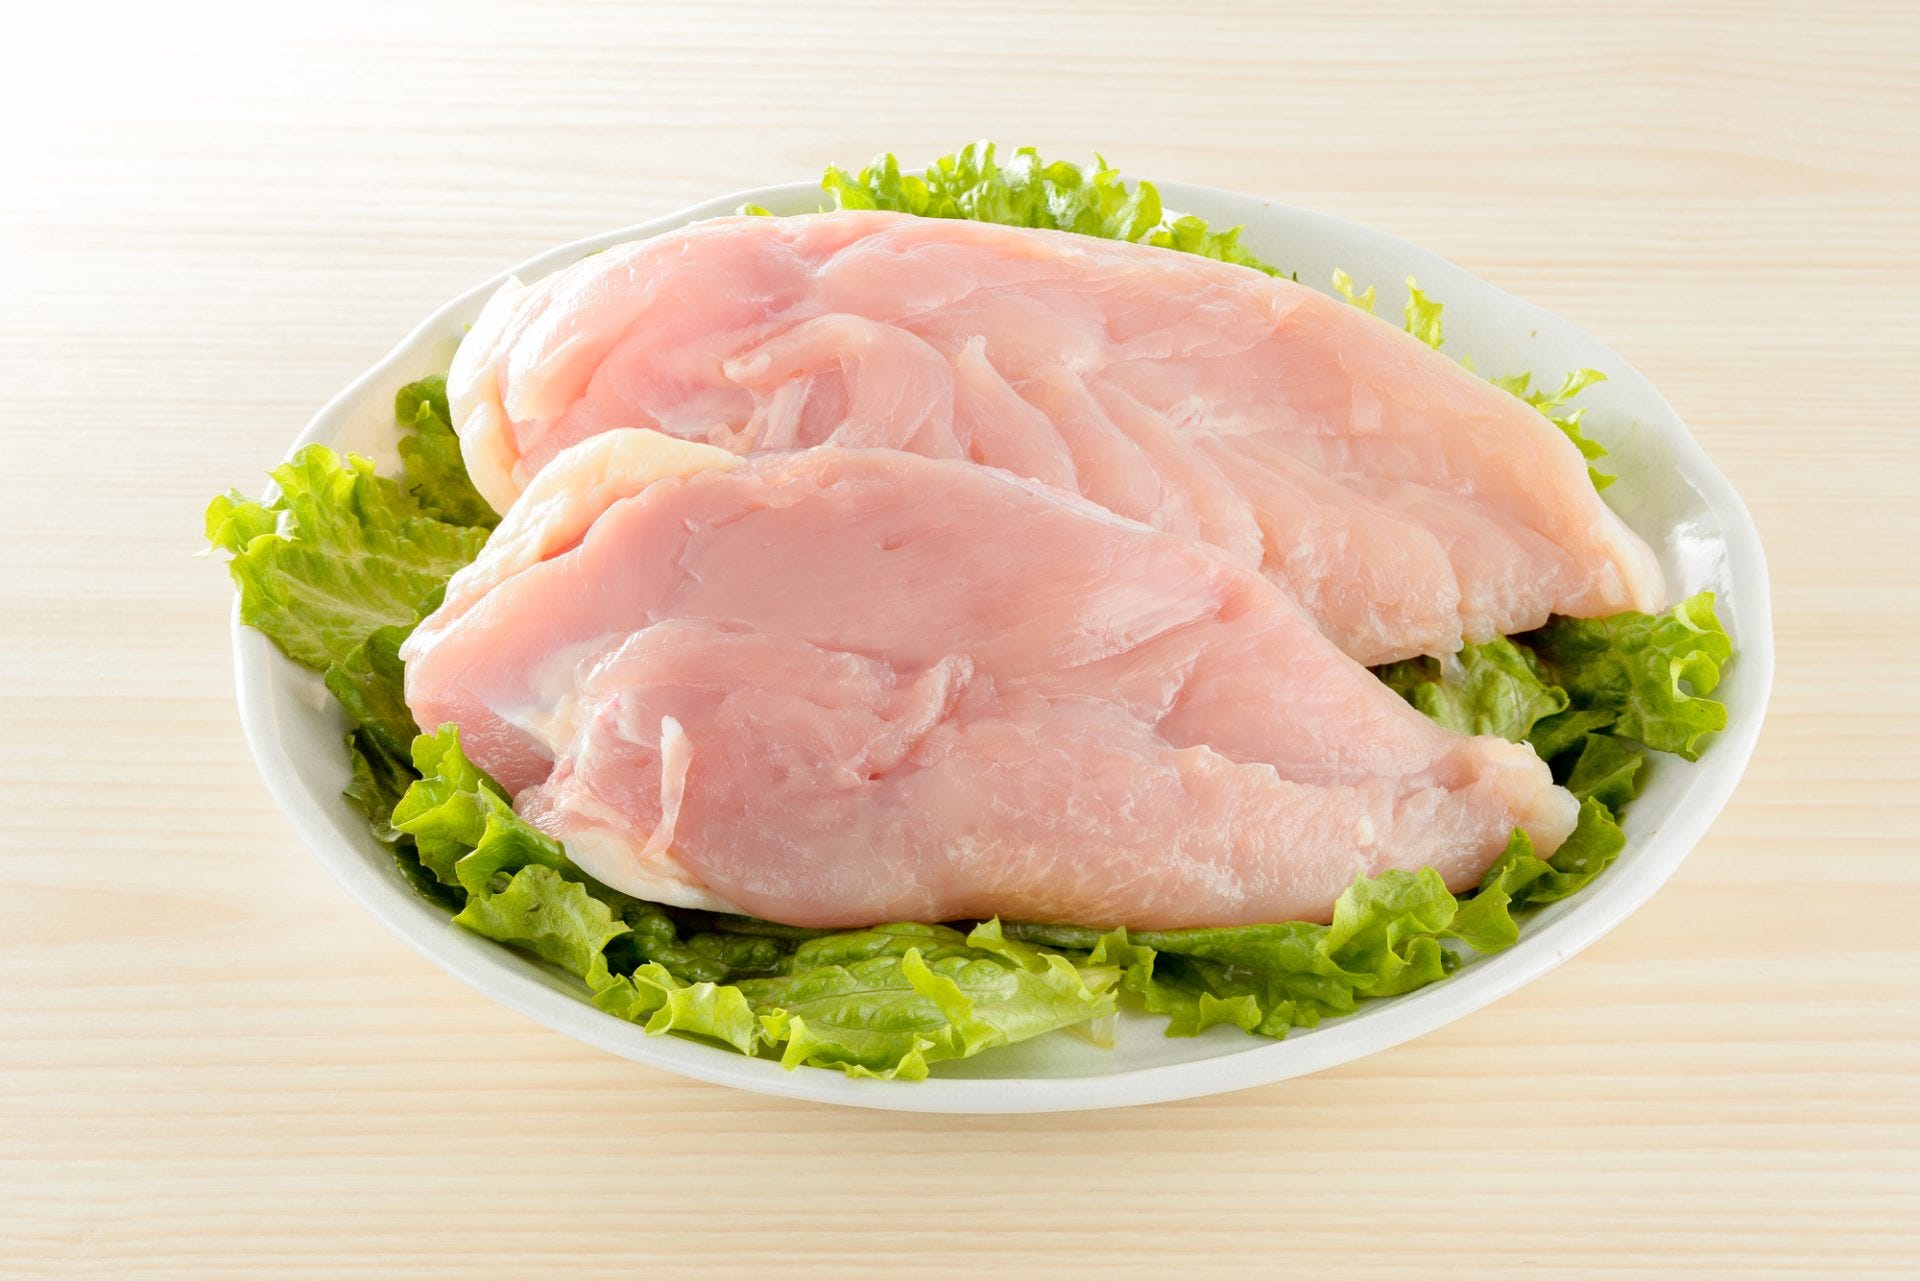 鶏肉に含まれる 栄養素 タンパク質